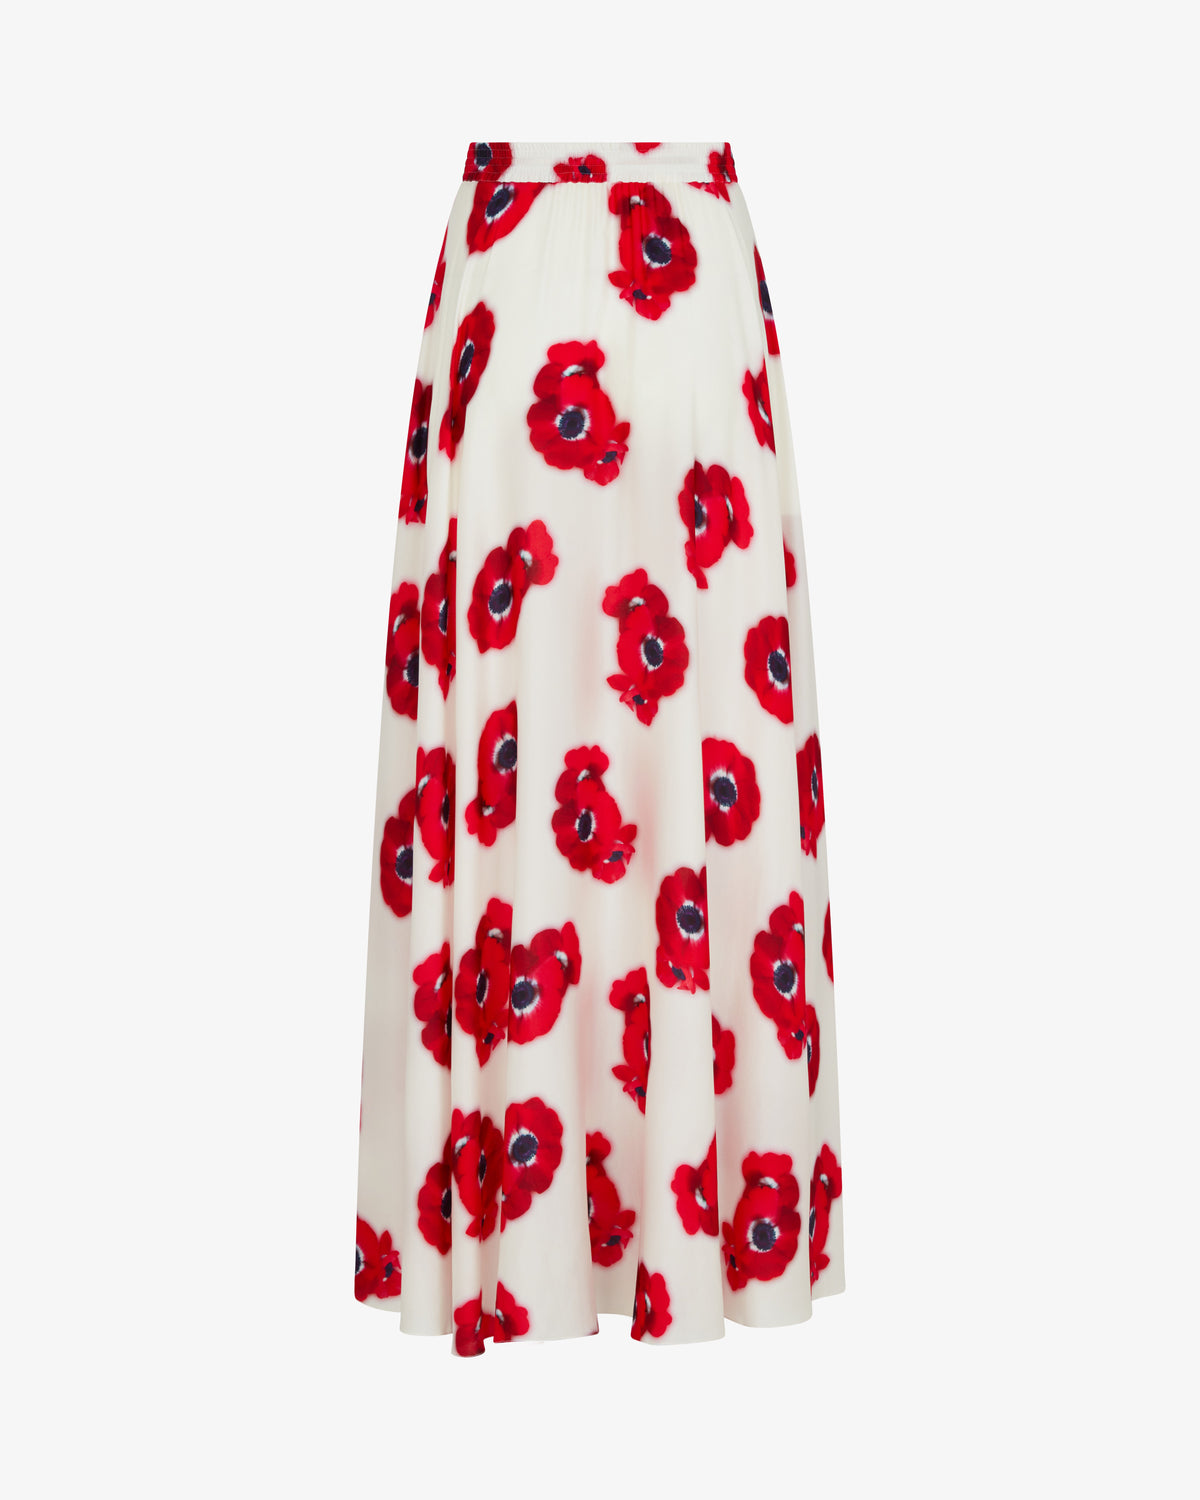 Graphic Poppy Full Maxi Skirt - White/Red